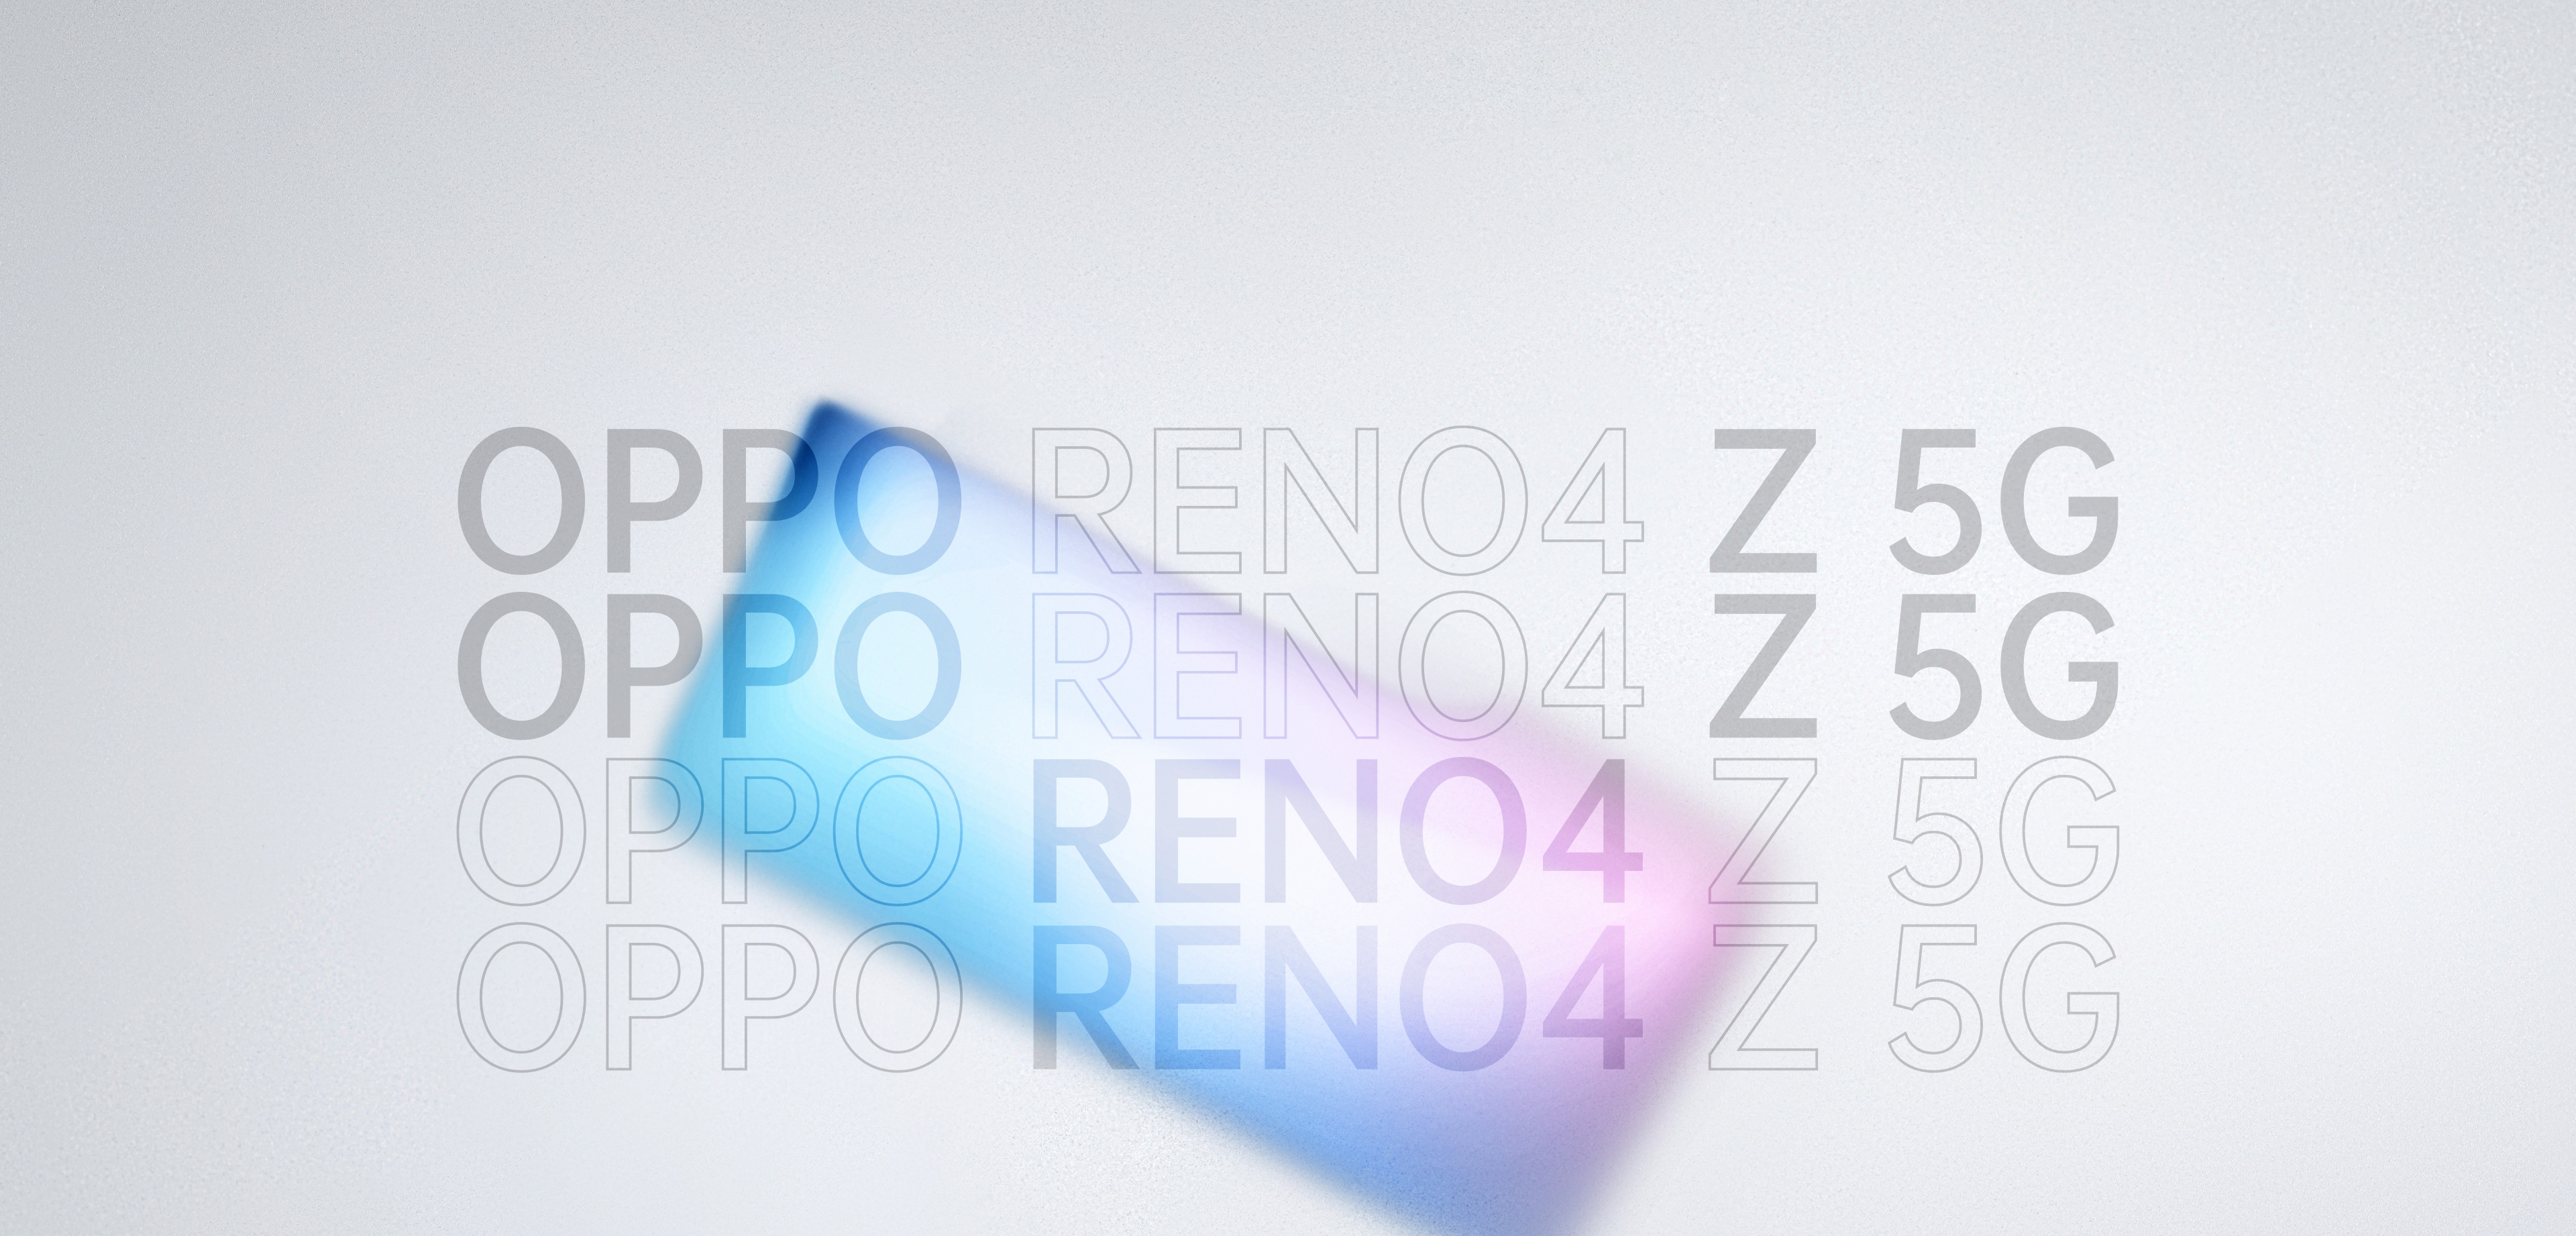 OPPO Reno4 Z